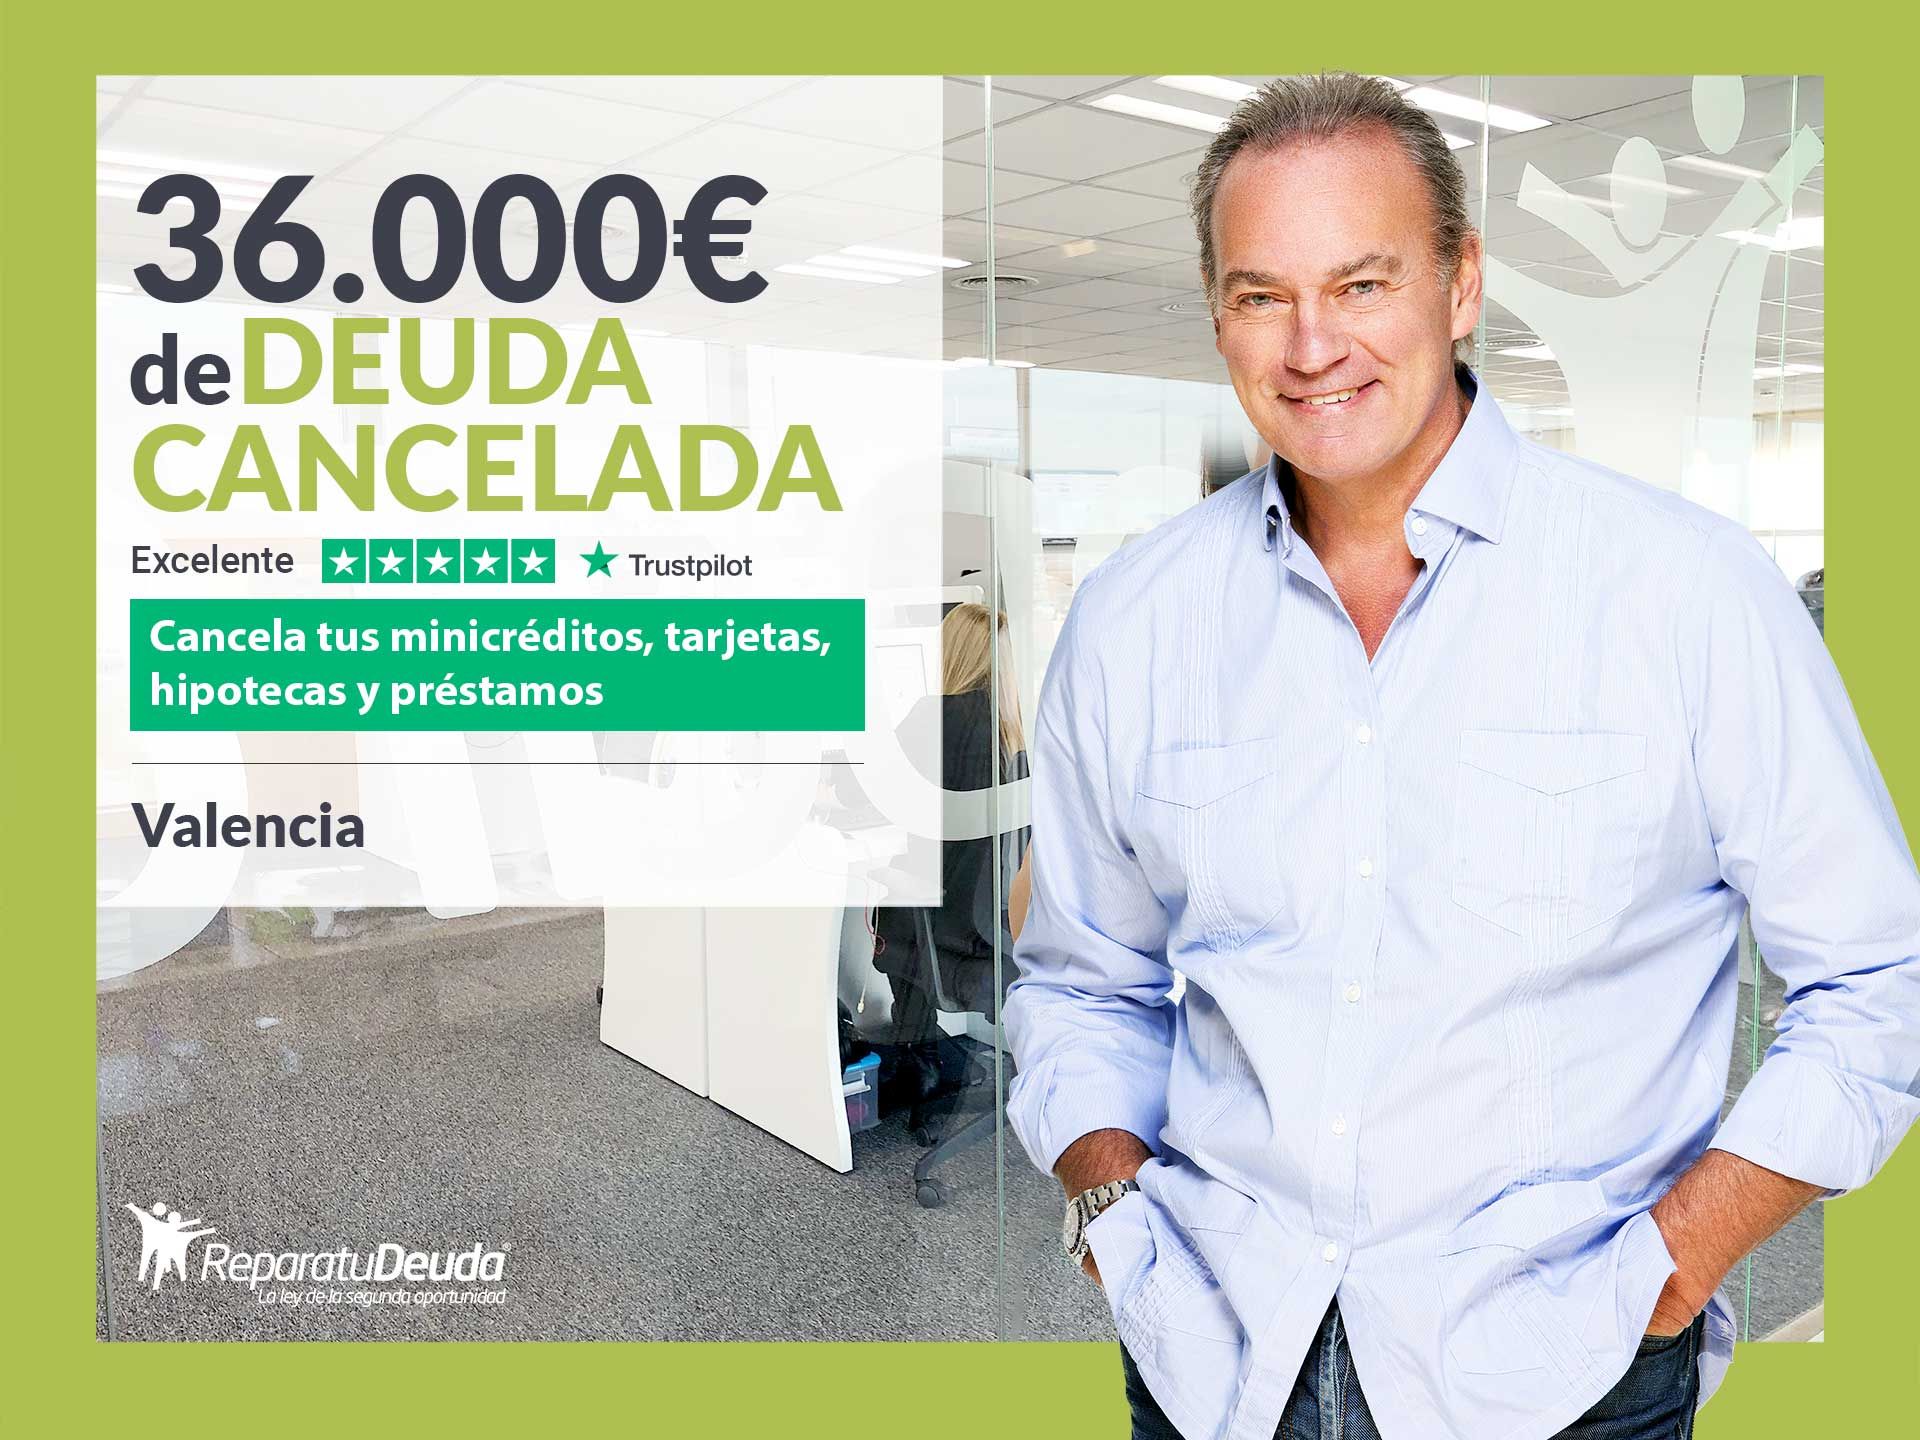 Repara tu Deuda Abogados cancela 36.000? en Valencia con la Ley de Segunda Oportunidad